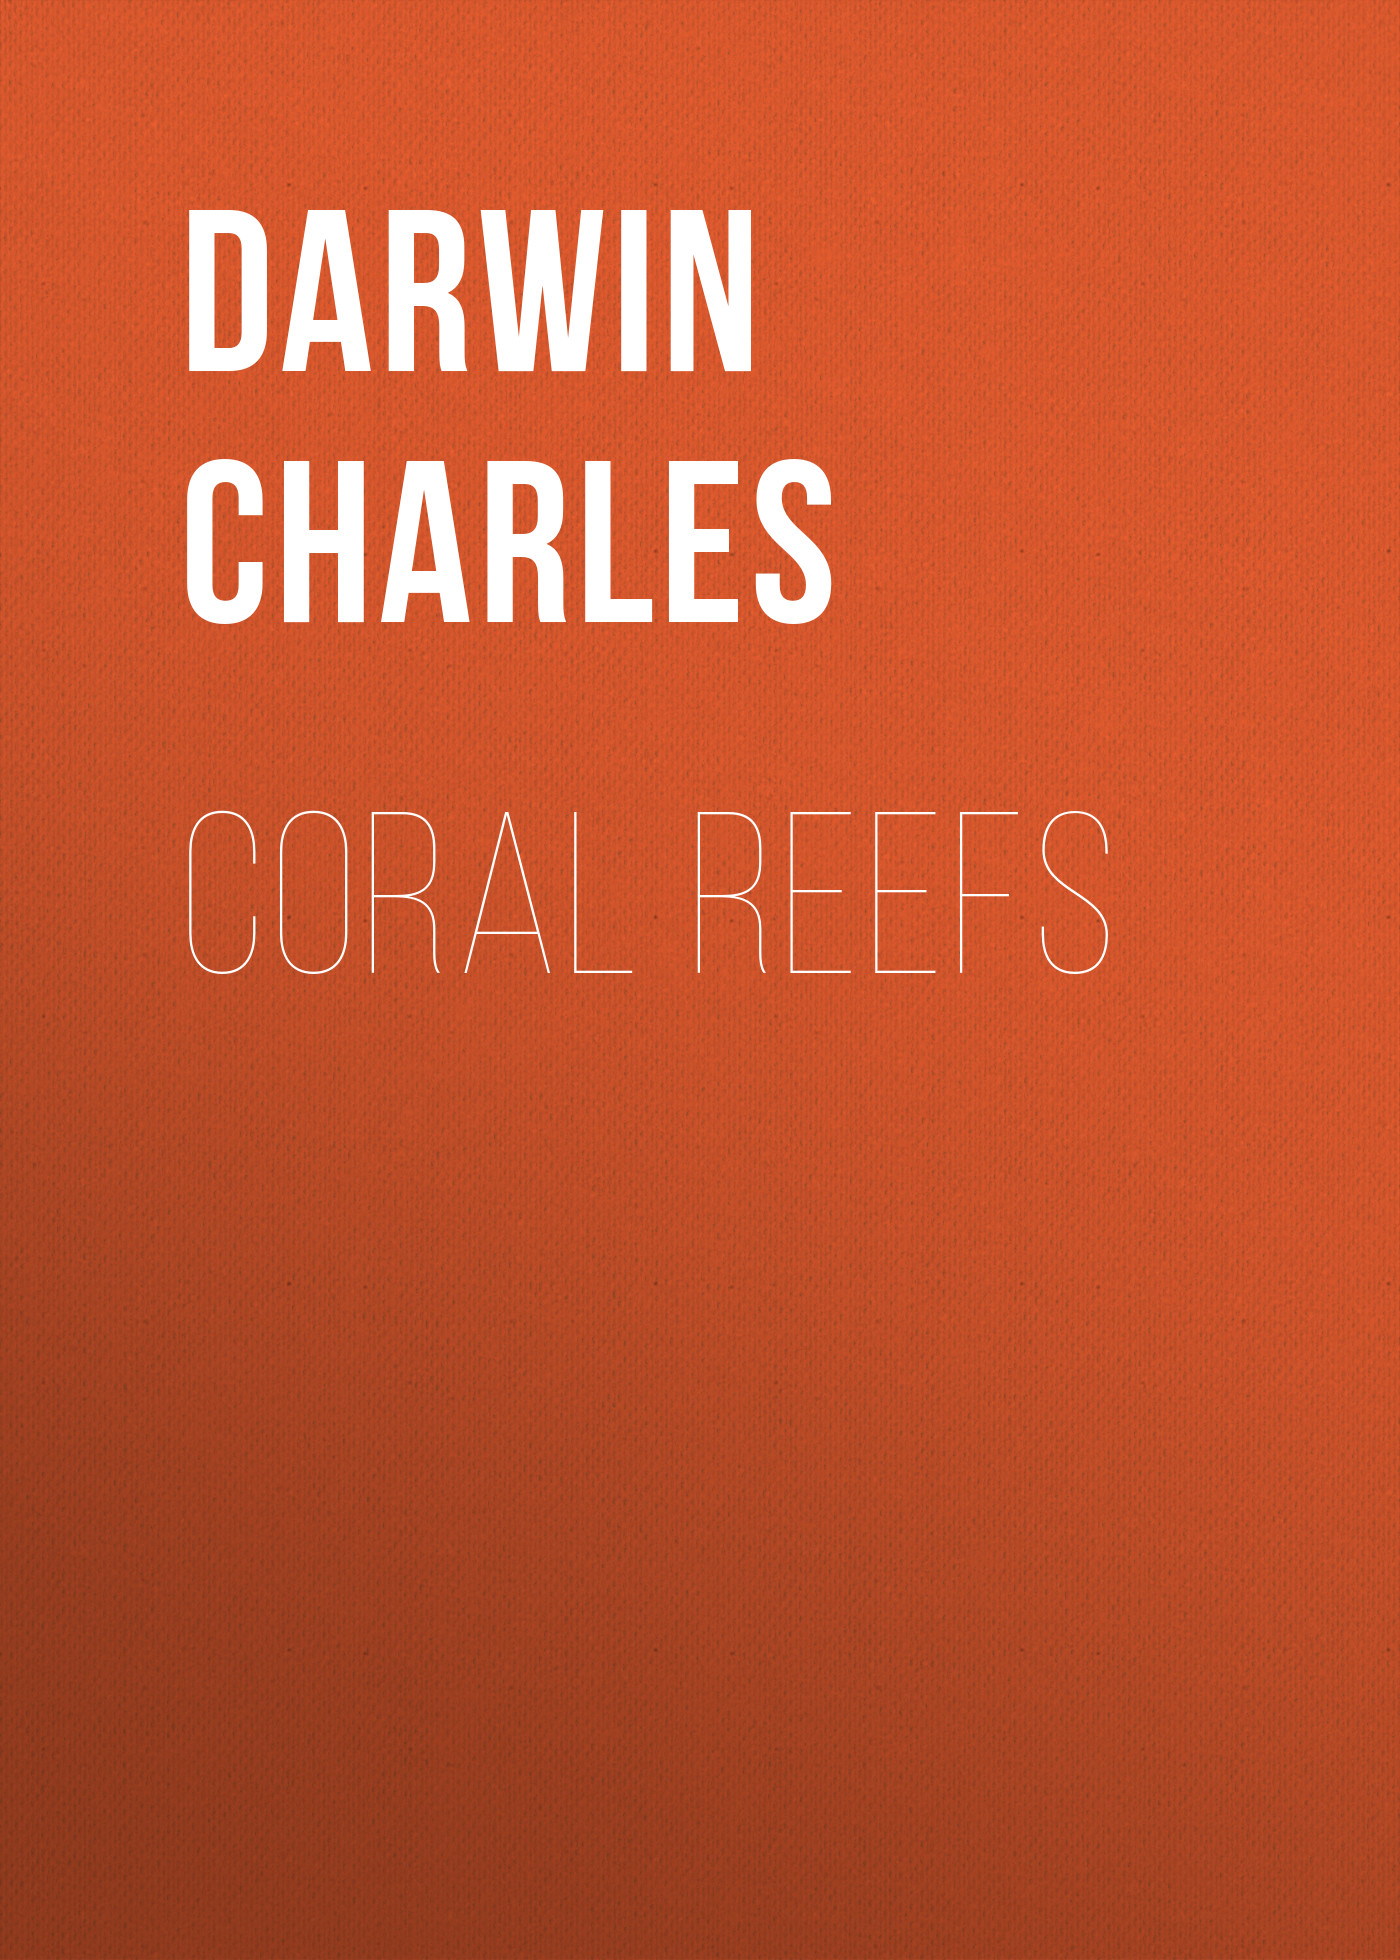 Книга Coral Reefs из серии , созданная Charles Darwin, может относится к жанру Зарубежная старинная литература, Зарубежная классика. Стоимость электронной книги Coral Reefs с идентификатором 25092524 составляет 0 руб.